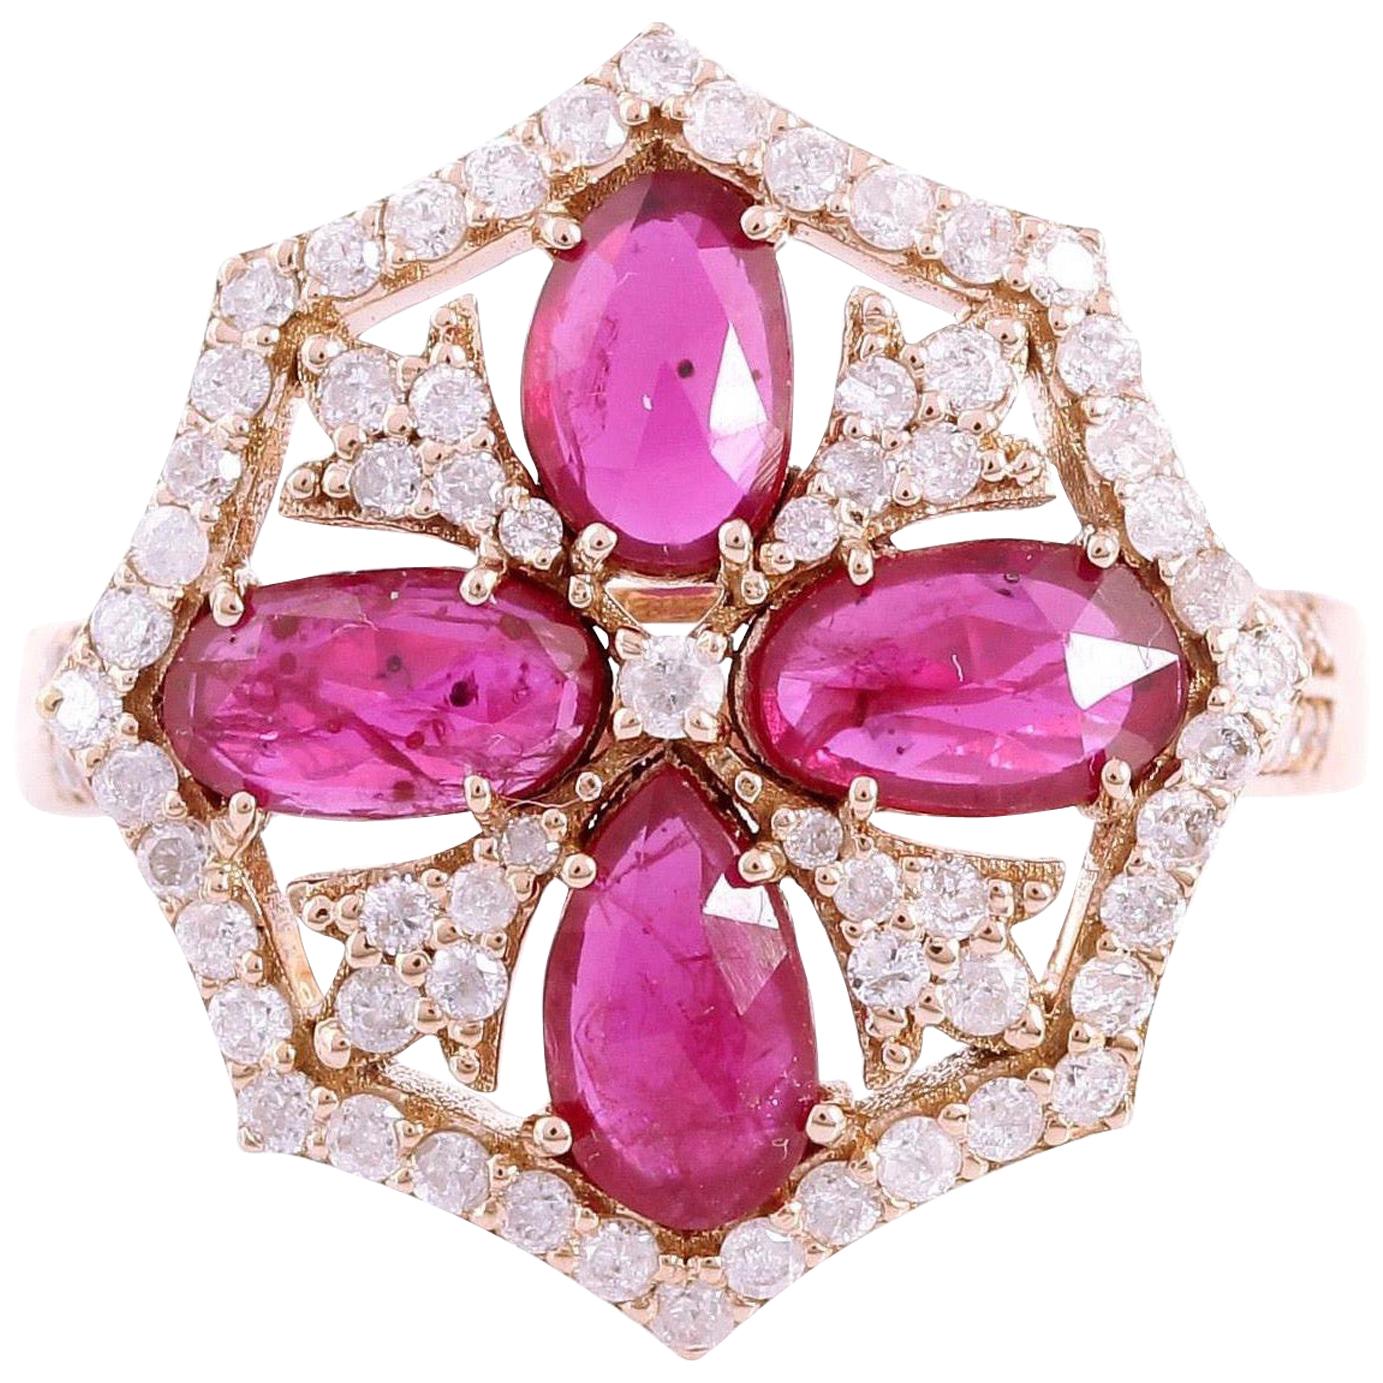 1.5 Carat Ruby Diamond 18 Karat Gold Ring For Sale